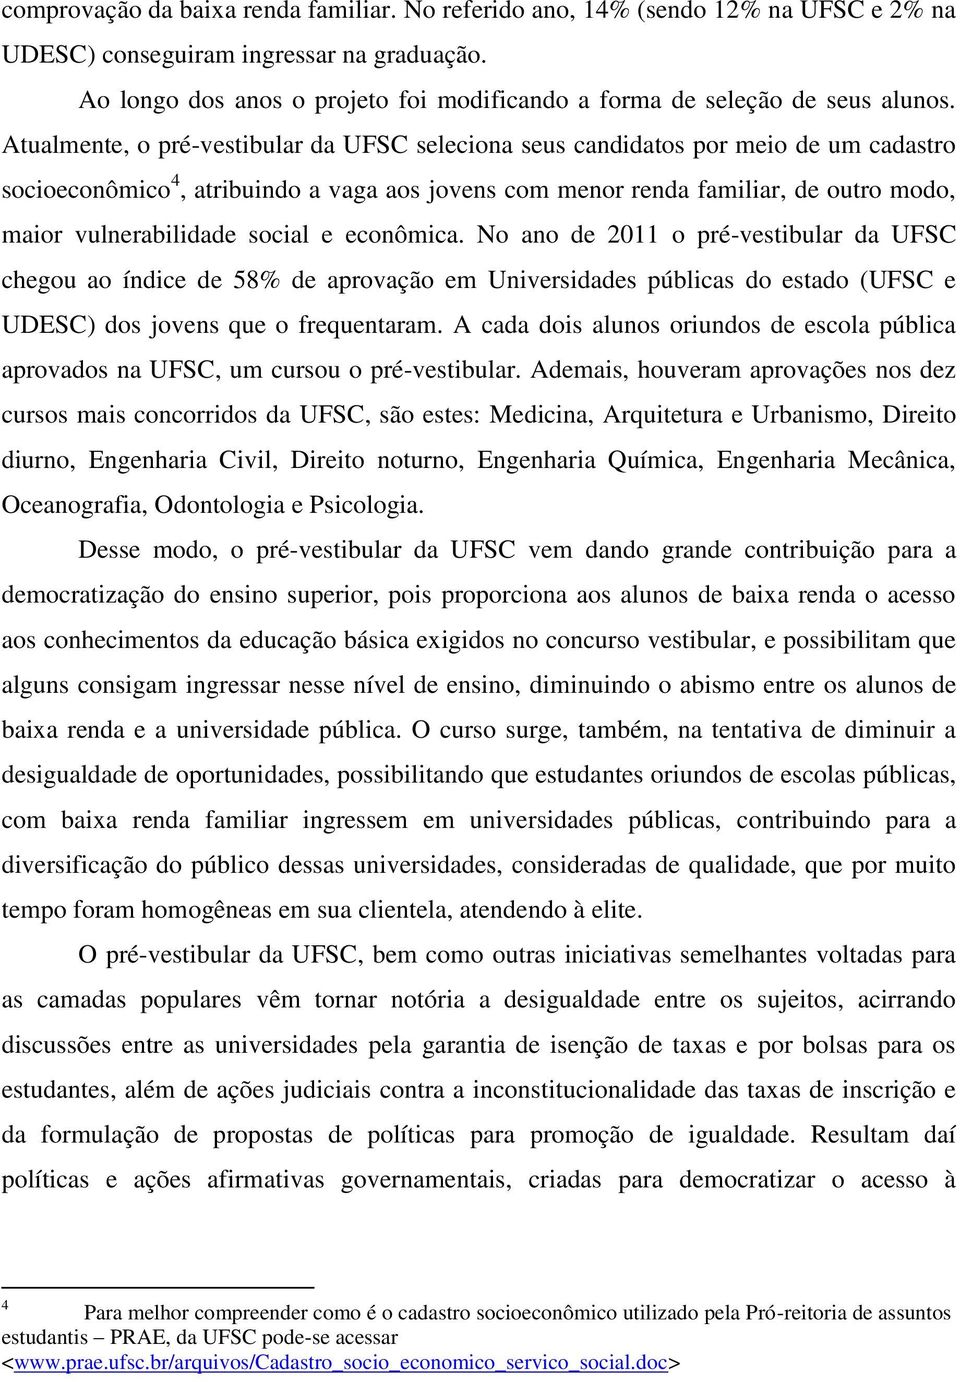 Atualmente, o pré-vestibular da UFSC seleciona seus candidatos por meio de um cadastro socioeconômico 4, atribuindo a vaga aos jovens com menor renda familiar, de outro modo, maior vulnerabilidade